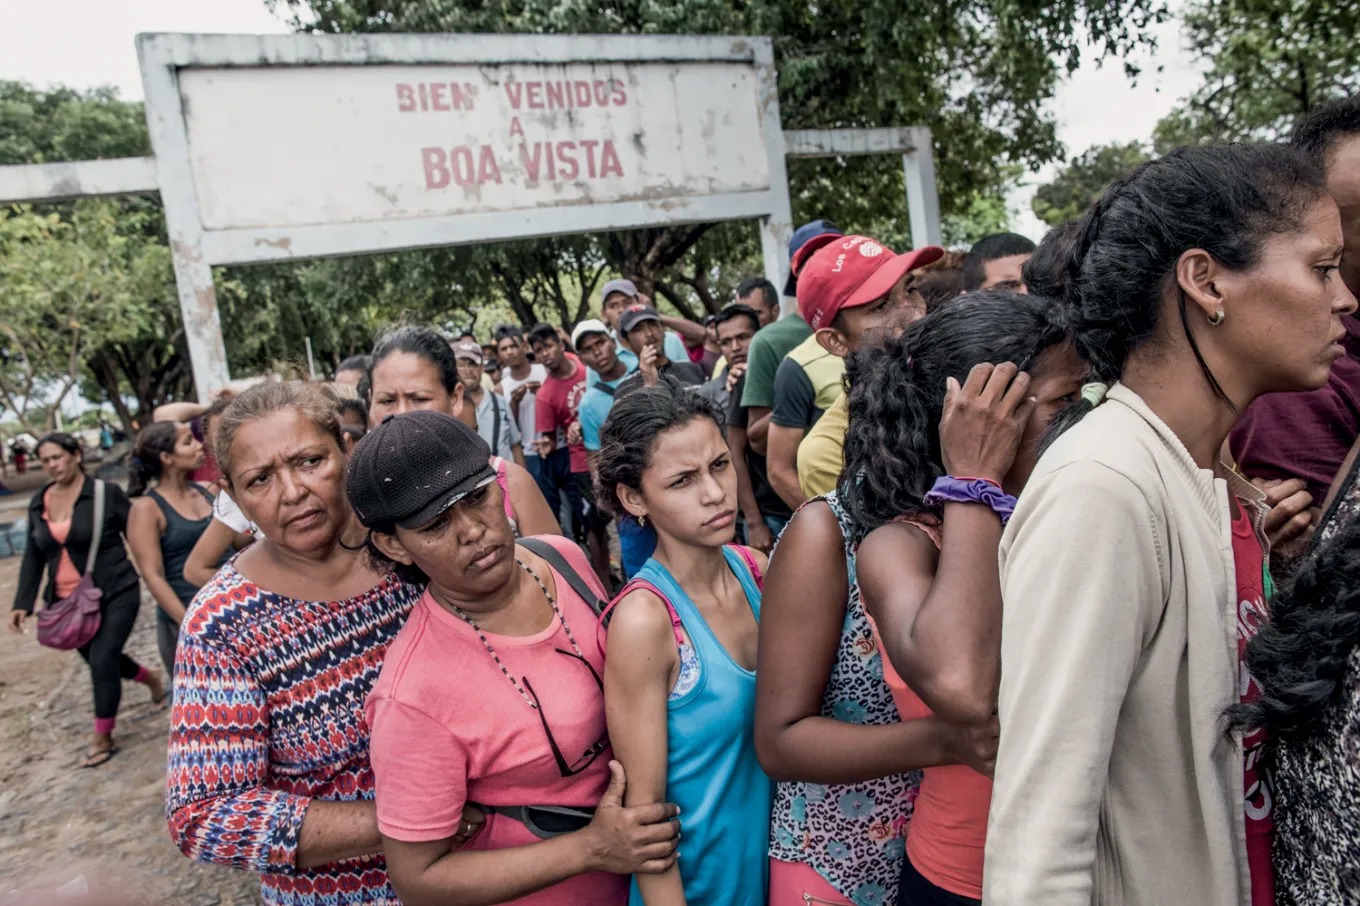 Travessia na fronteira: um grupo ainda pena para se estabelecer (Andre Coelho/Getty Images).